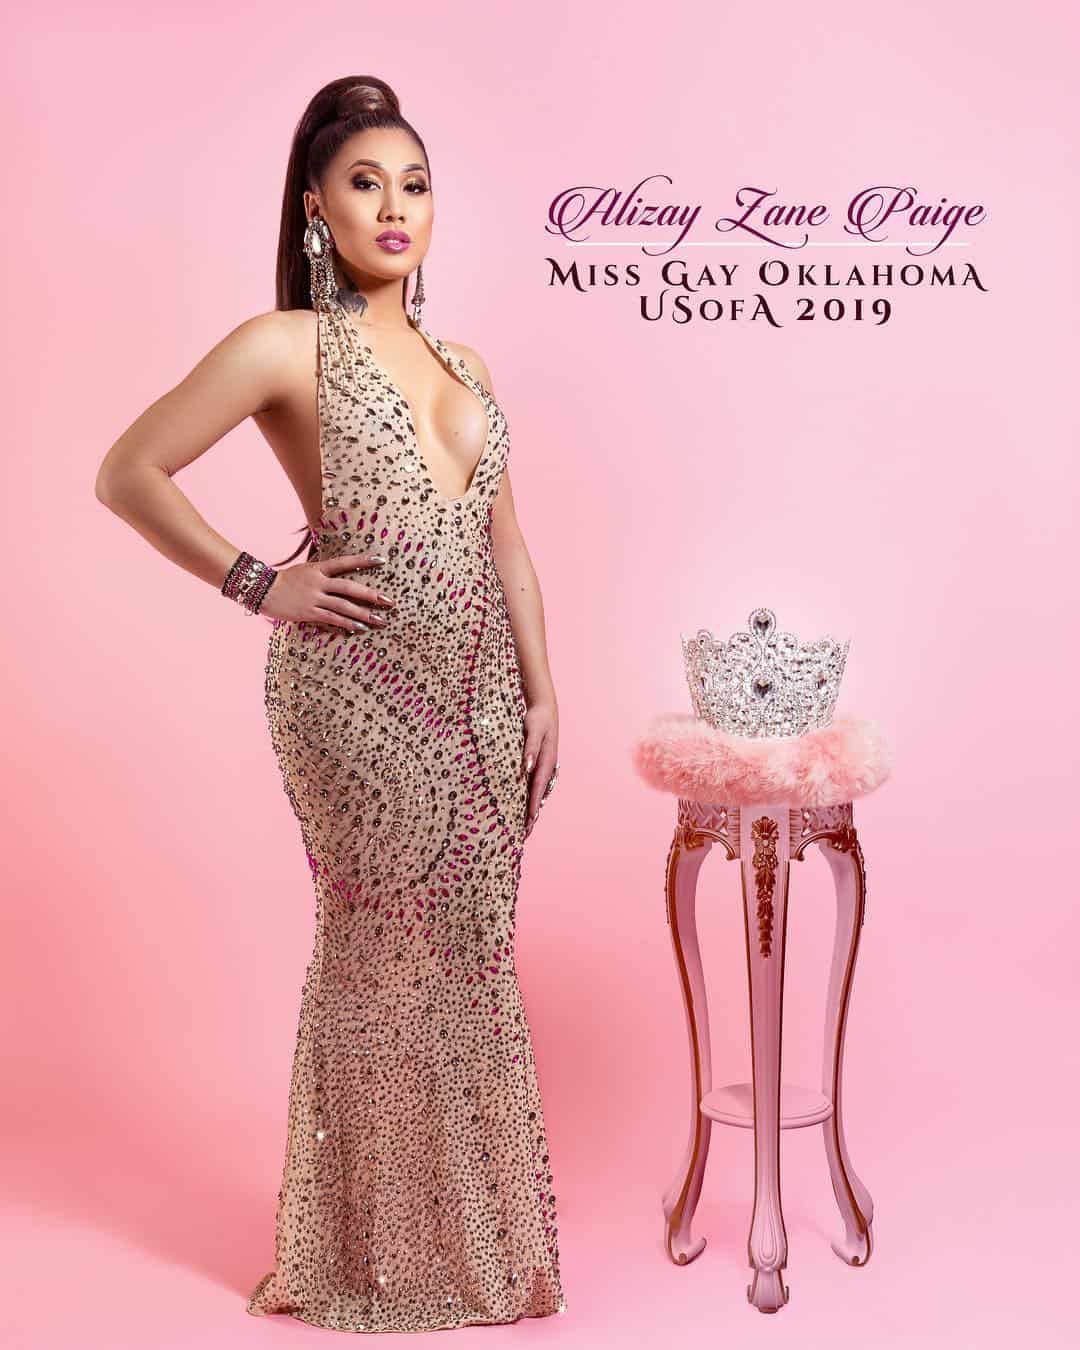 Alizay Lane Paige Miss Gay Oklahoma USofA 2019